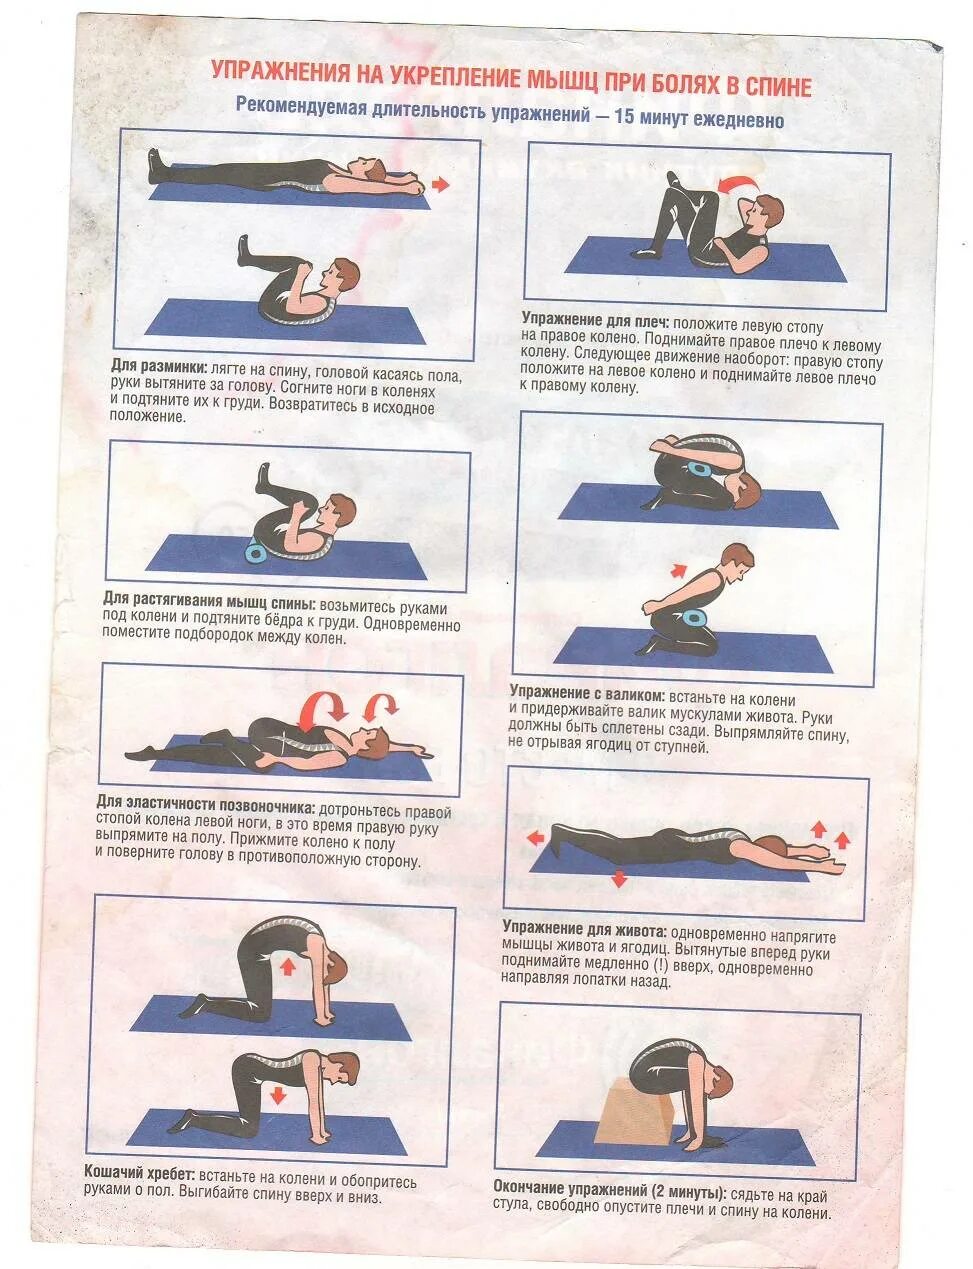 Упражнения для укрепления мышц позвоночника и поясницы. Упражнения ЛФК для спины при болях в пояснице. Комплекс упражнений при боли в спине и пояснице. Гимнастика для спины при болях в пояснице для мужчин. Упражнения при грыже позвоночника протрузии поясничного